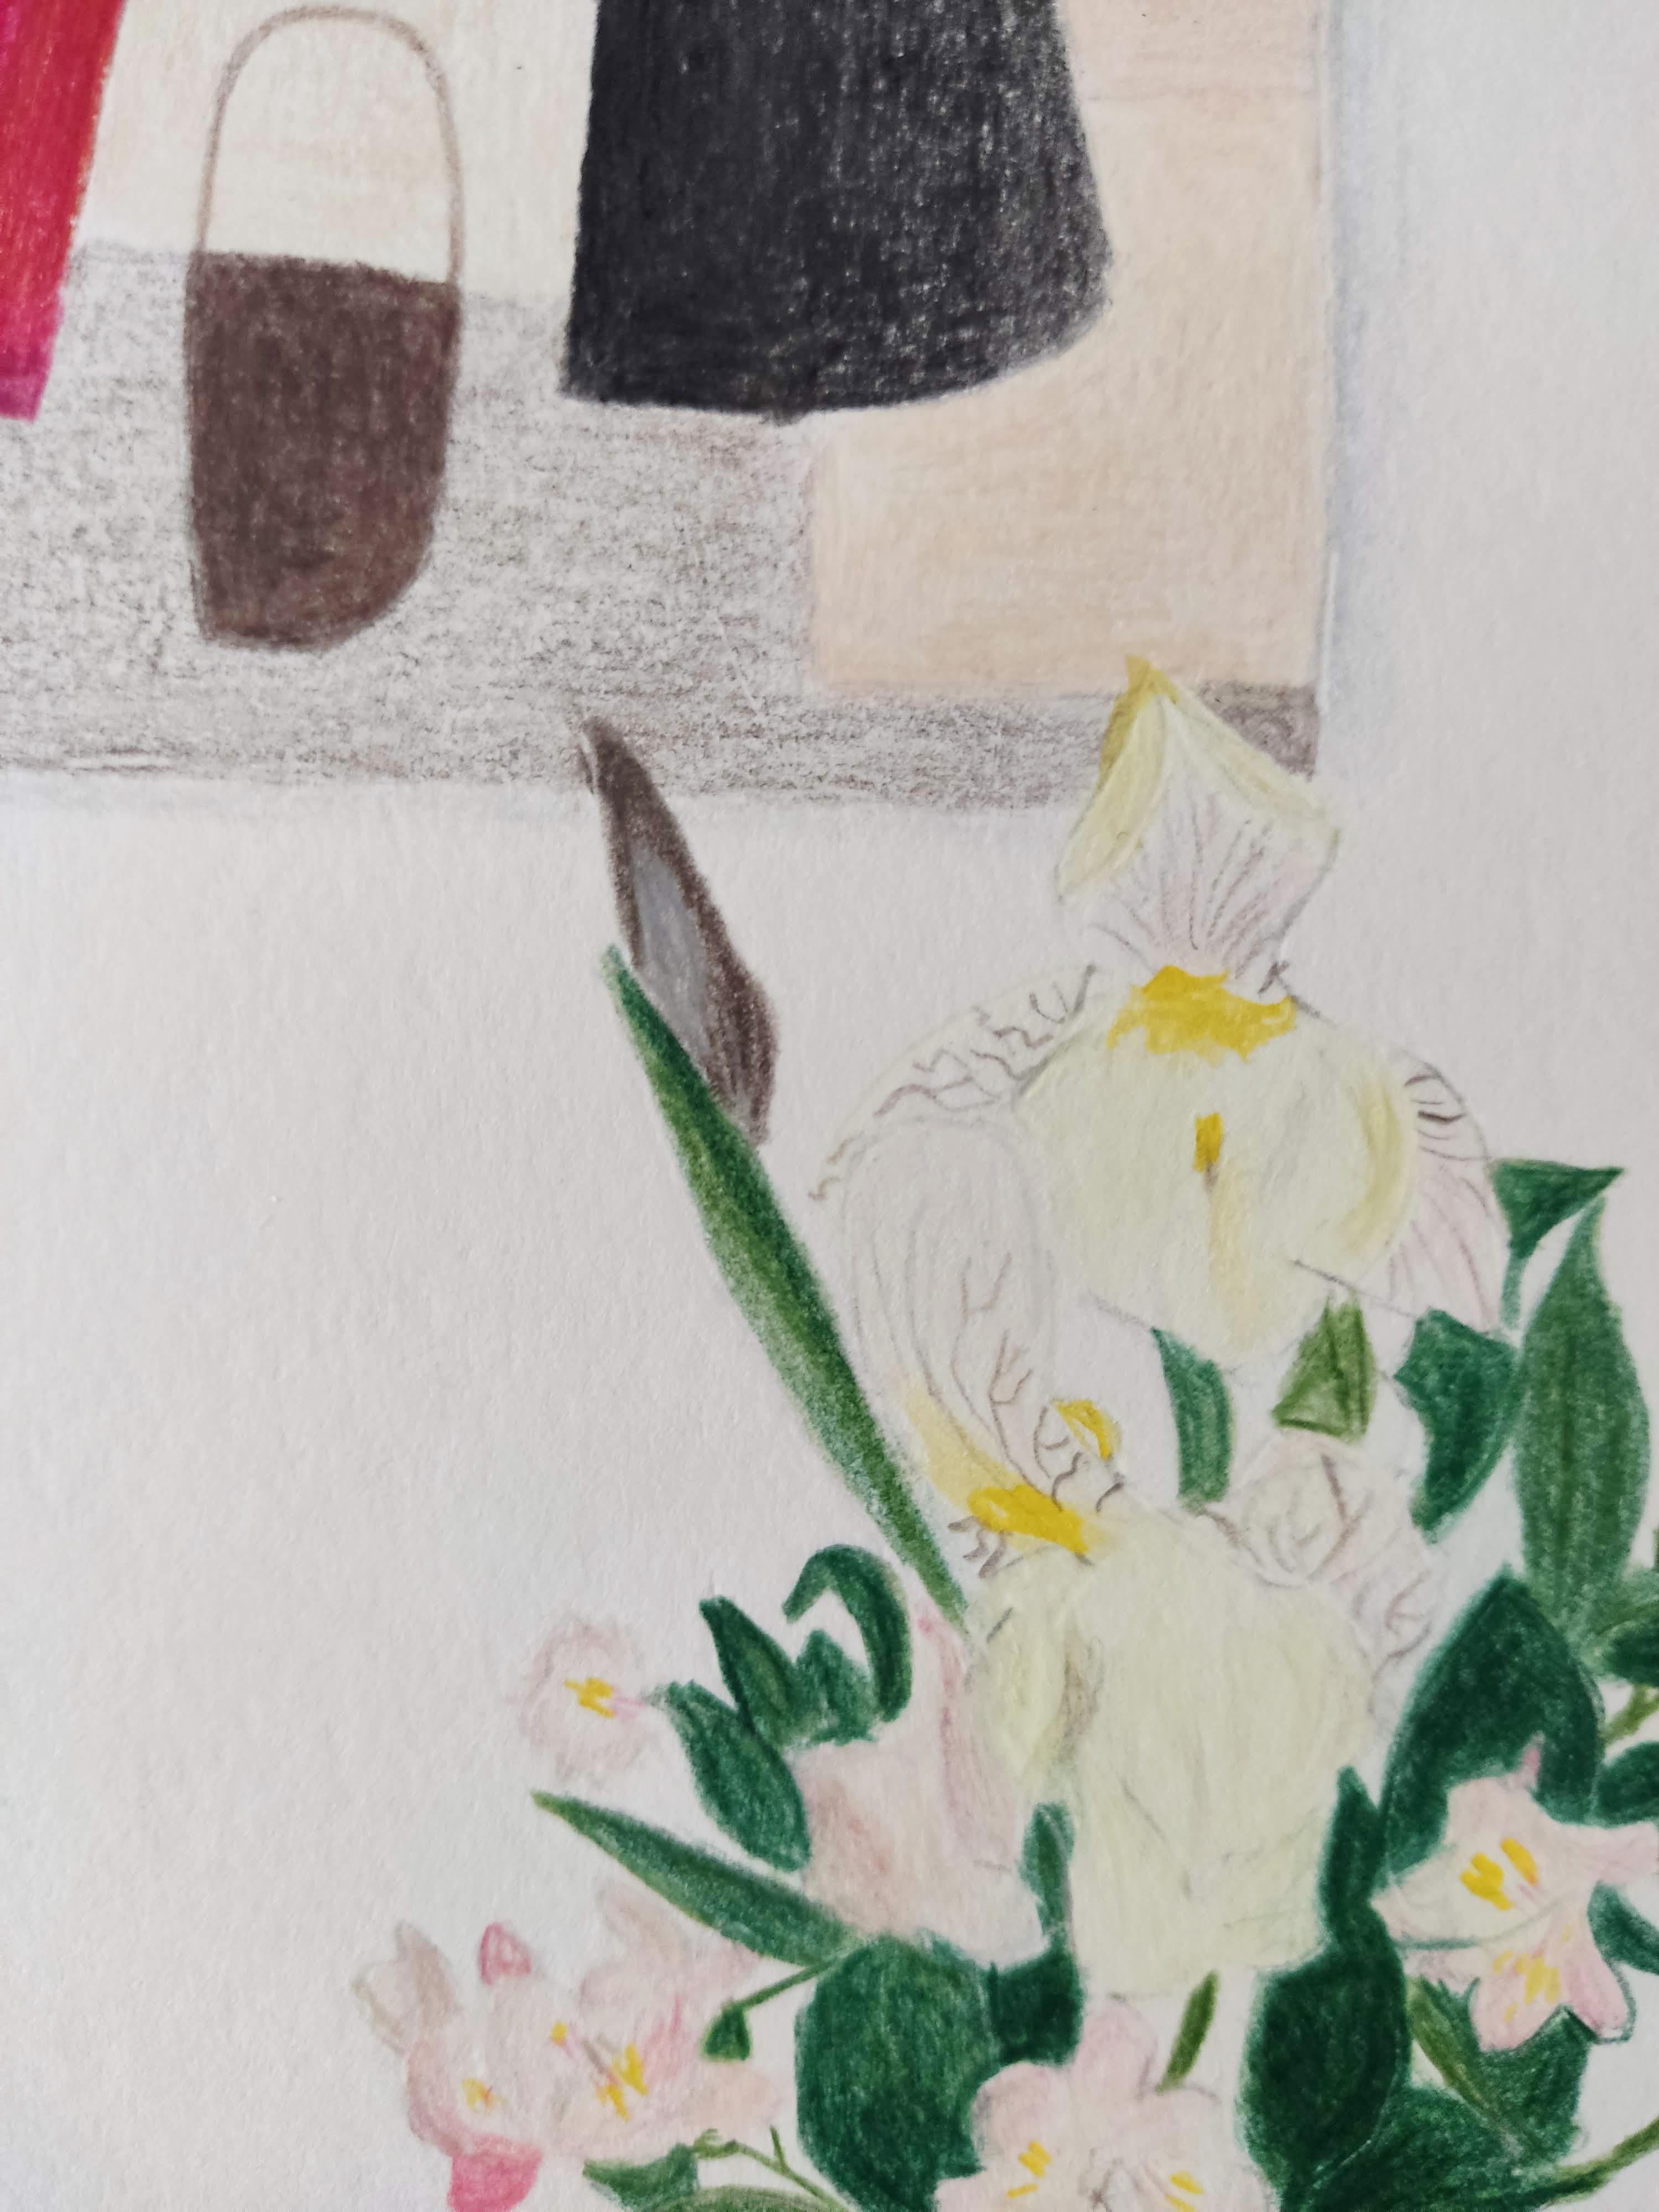 Seringa mit Vase – Bunte Bleistifte, Blumen, Inneneinrichtung (Beige), Landscape Art, von Gabriel Riesnert